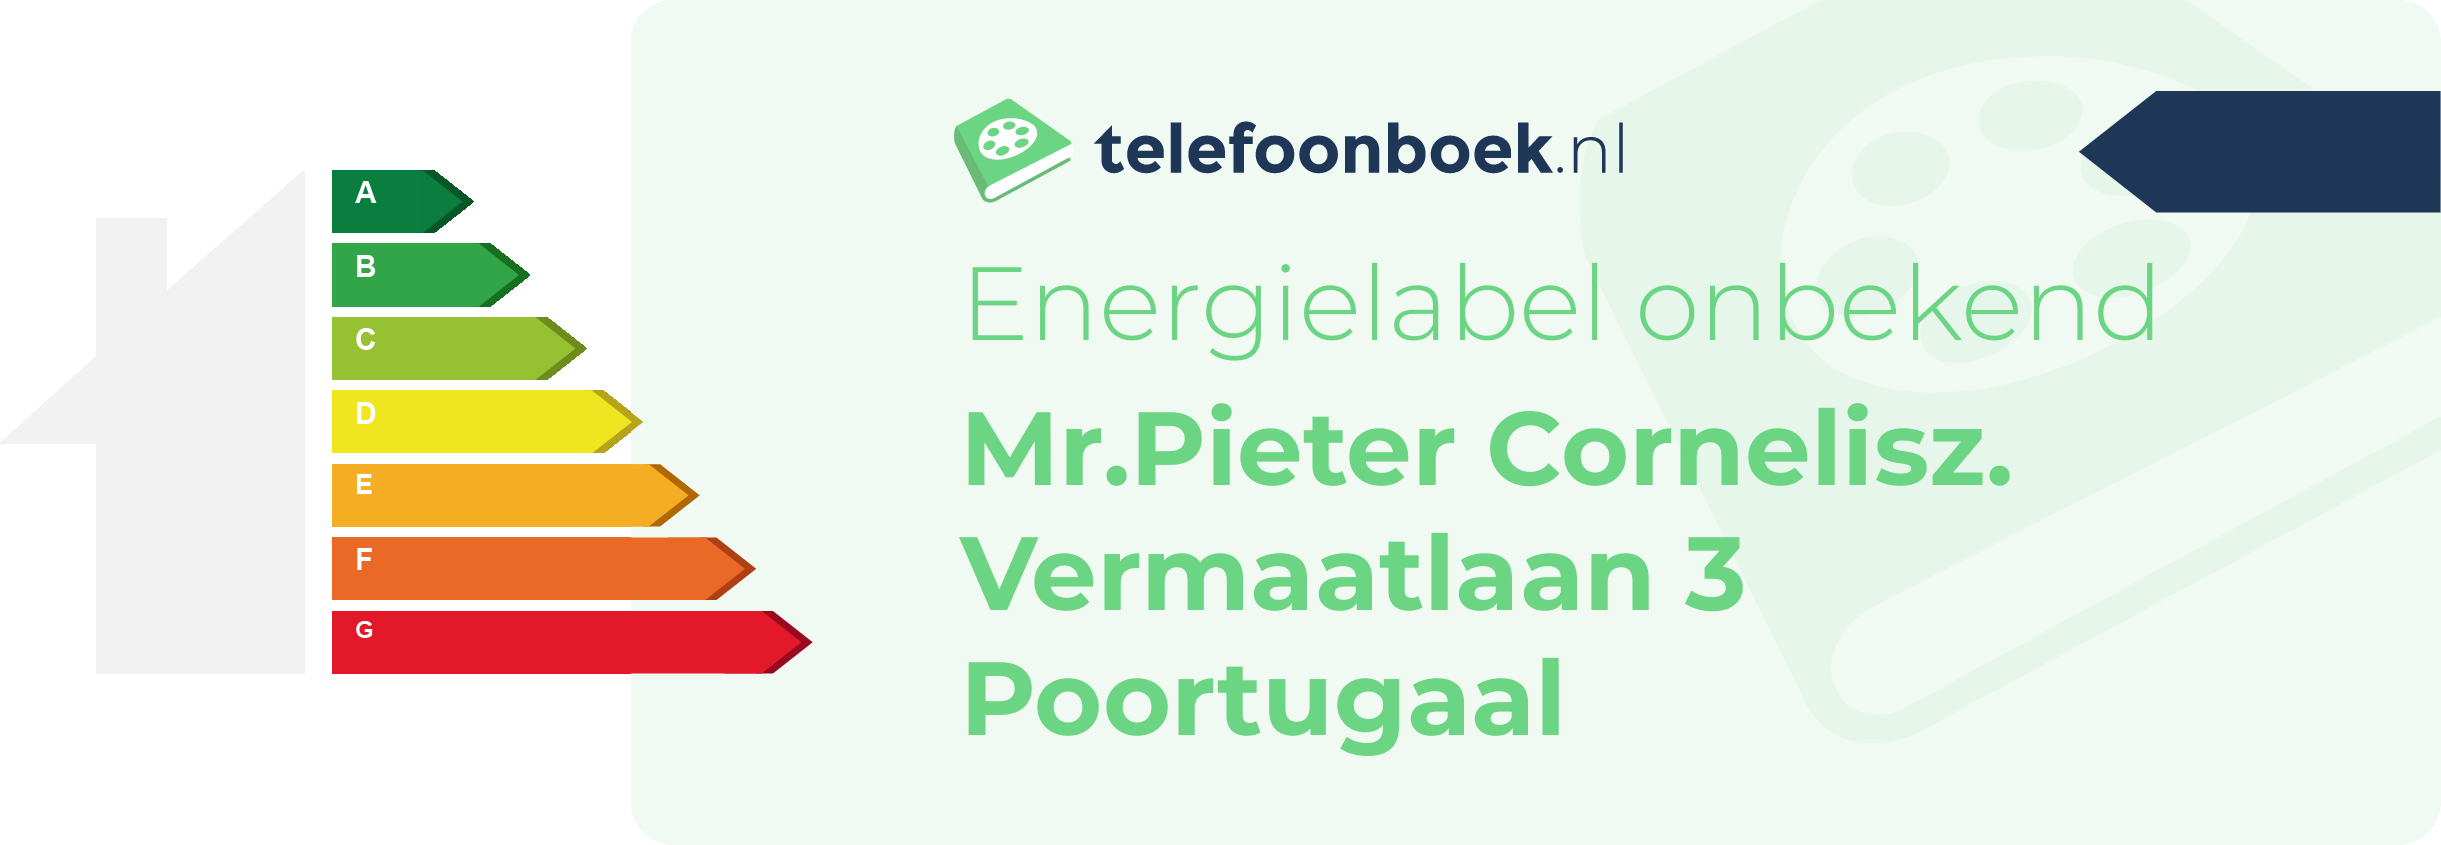 Energielabel Mr.Pieter Cornelisz. Vermaatlaan 3 Poortugaal